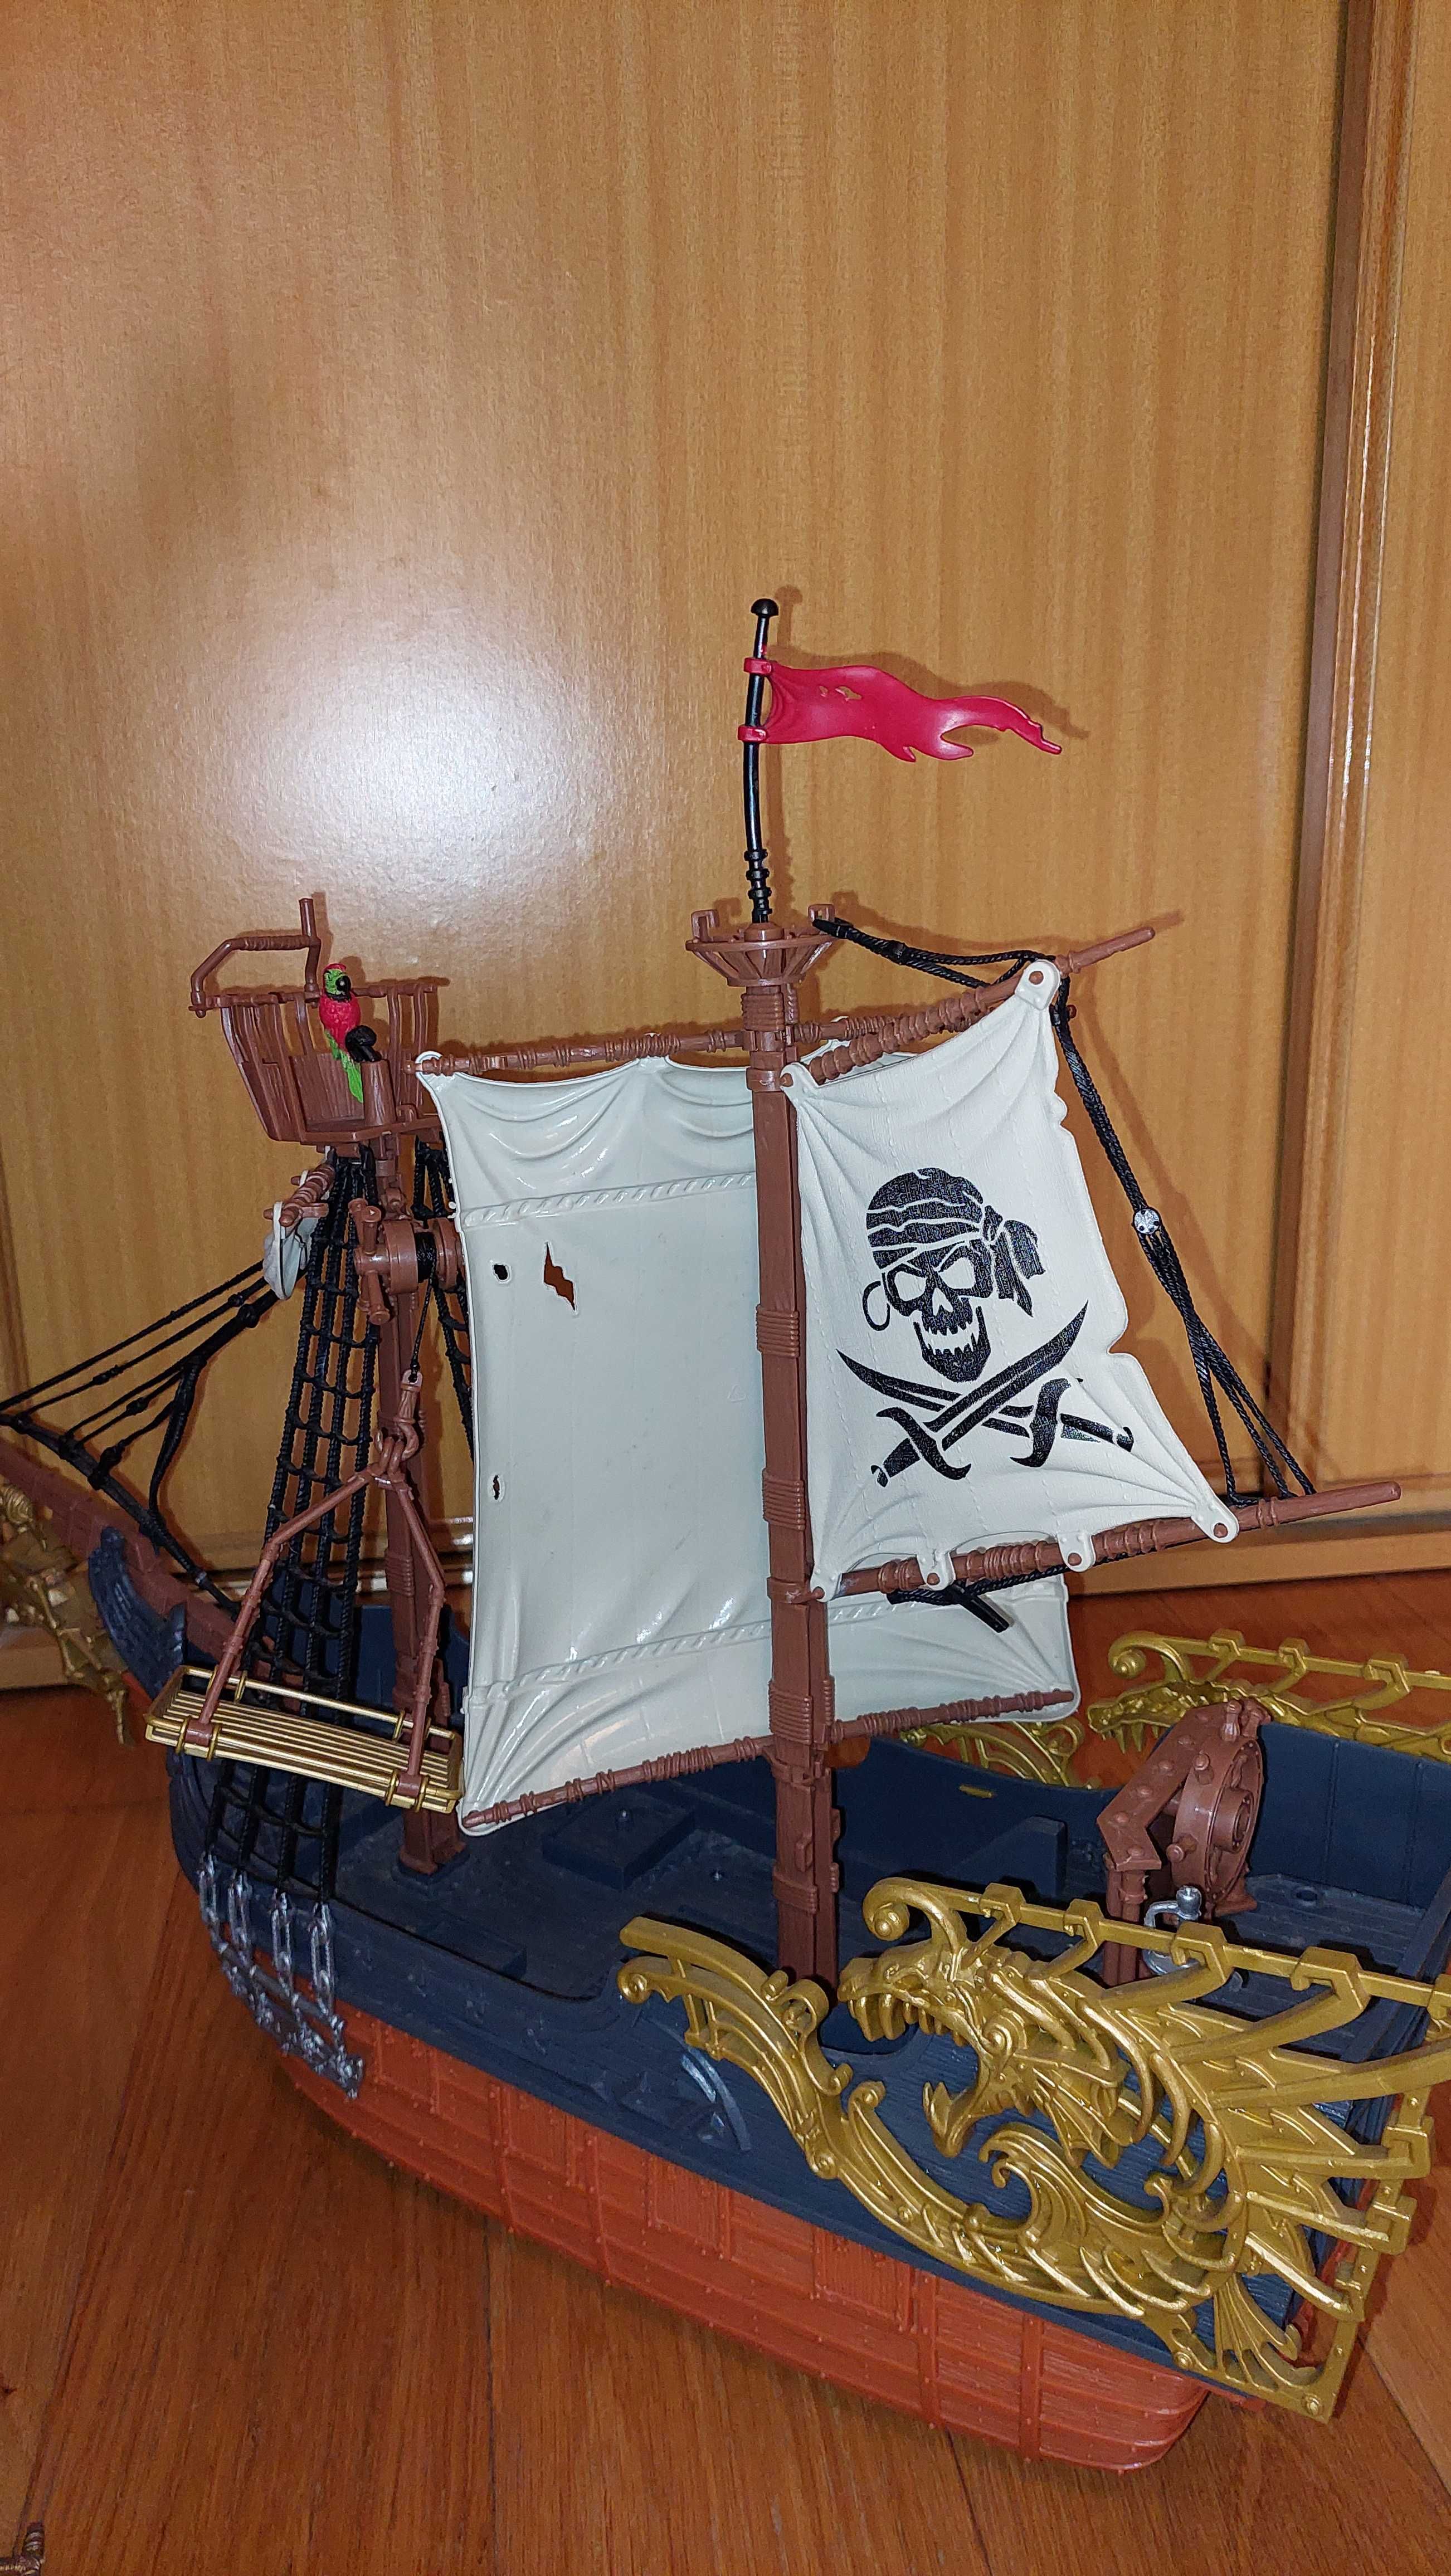 Grande Barco Pirata